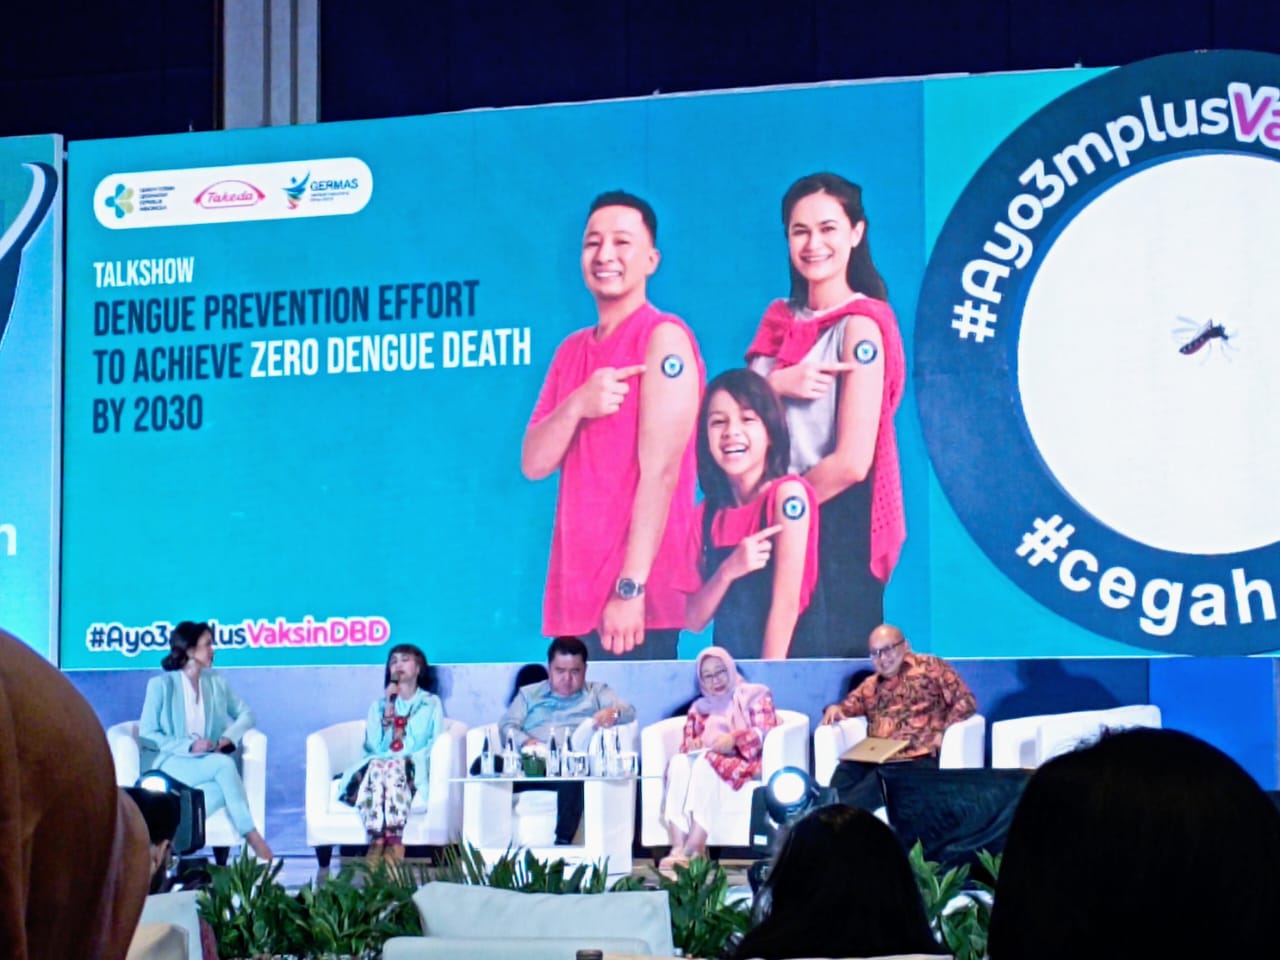 Dukung Zero Dengue Death 2030 Mulai Dari Diri Sendiri dan Keluarga Dengan Lakukan 3M Plus Vaksin DBD